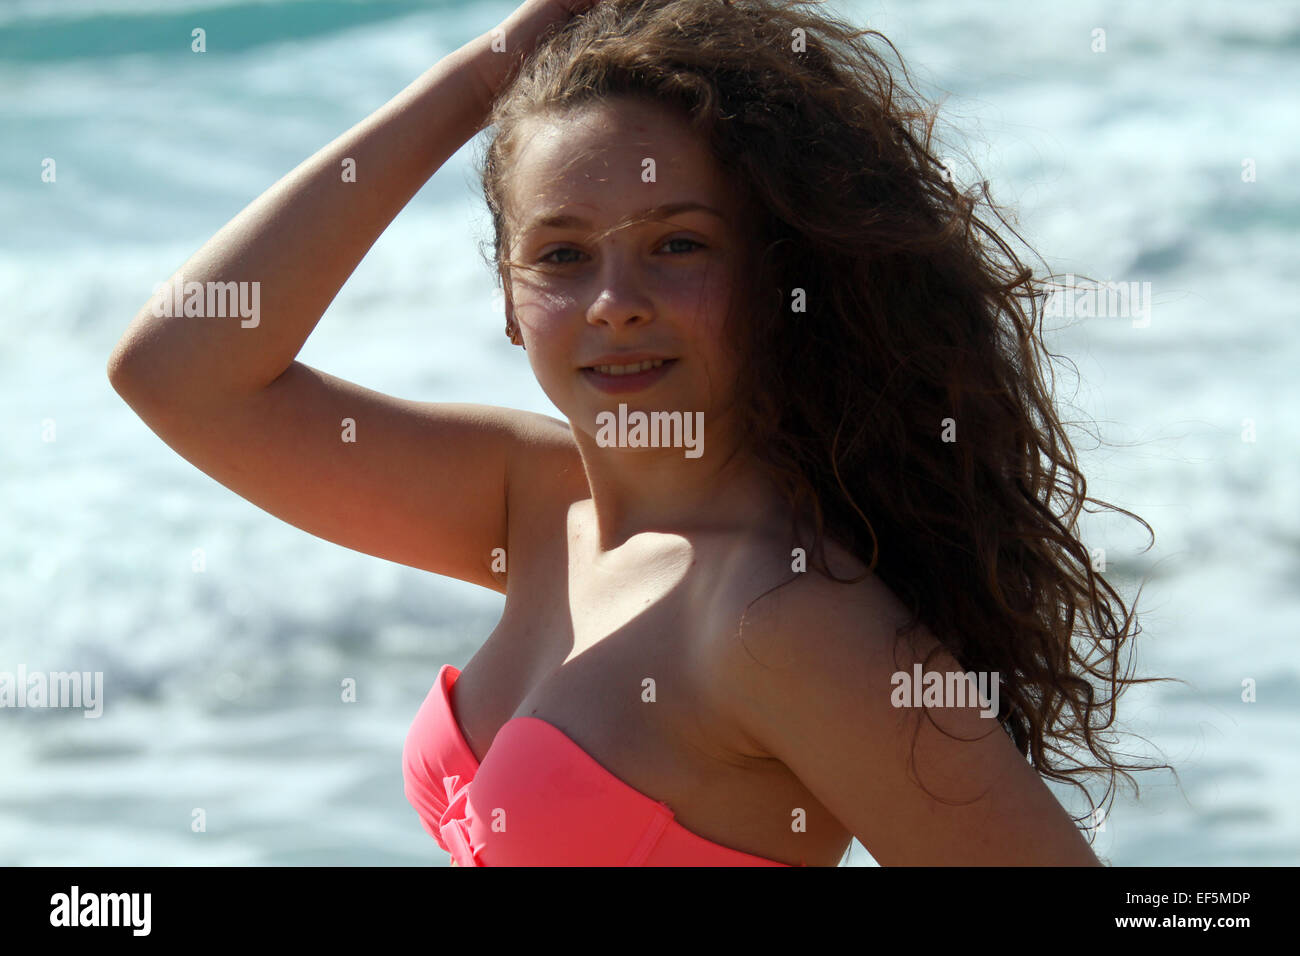 TEENAGE GIRL ON BEACH IN PINK BIKINI FALASARNA CRETE GREECE 30 April 2014 Stock Photo